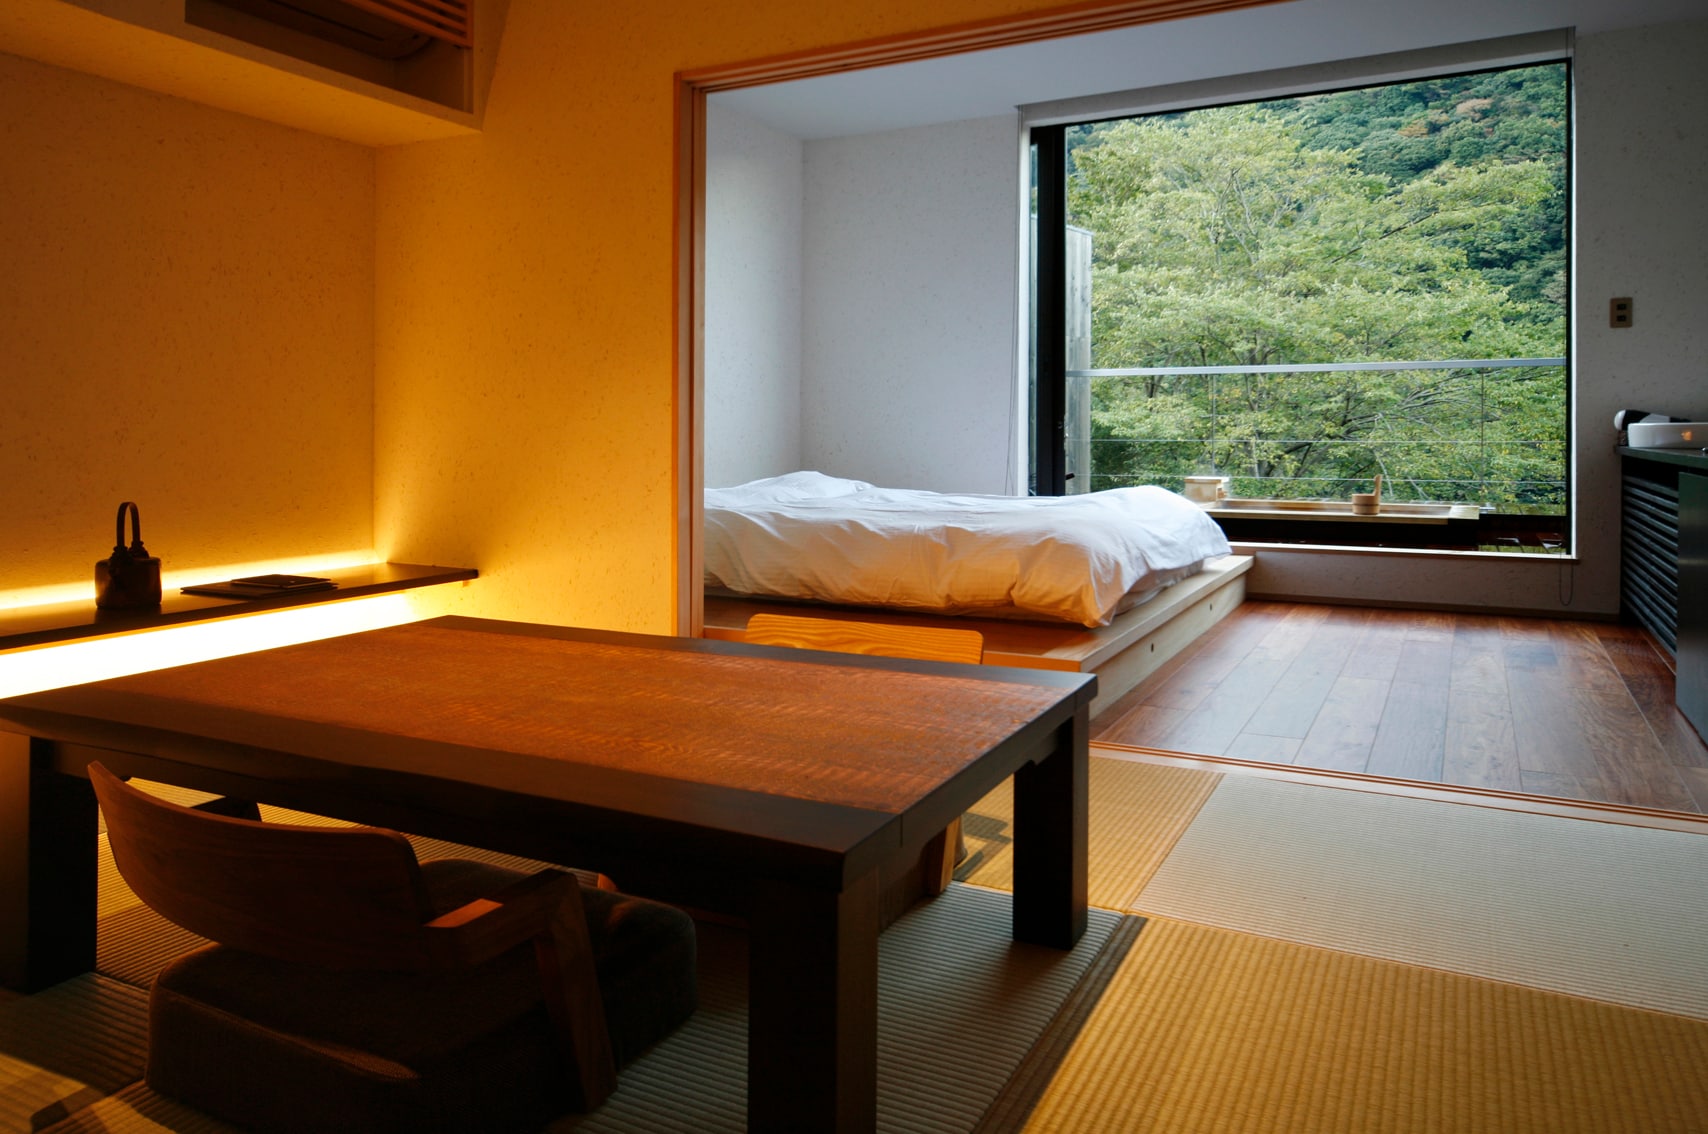 ・[ตัวอย่างห้องพัก Shion] ห้องที่มีอ่างอาบน้ำแบบเปิดโล่ง + ห้องสไตล์ญี่ปุ่นขนาด 6 เสื่อทาทามิ + ห้องนอนเตียงคู่